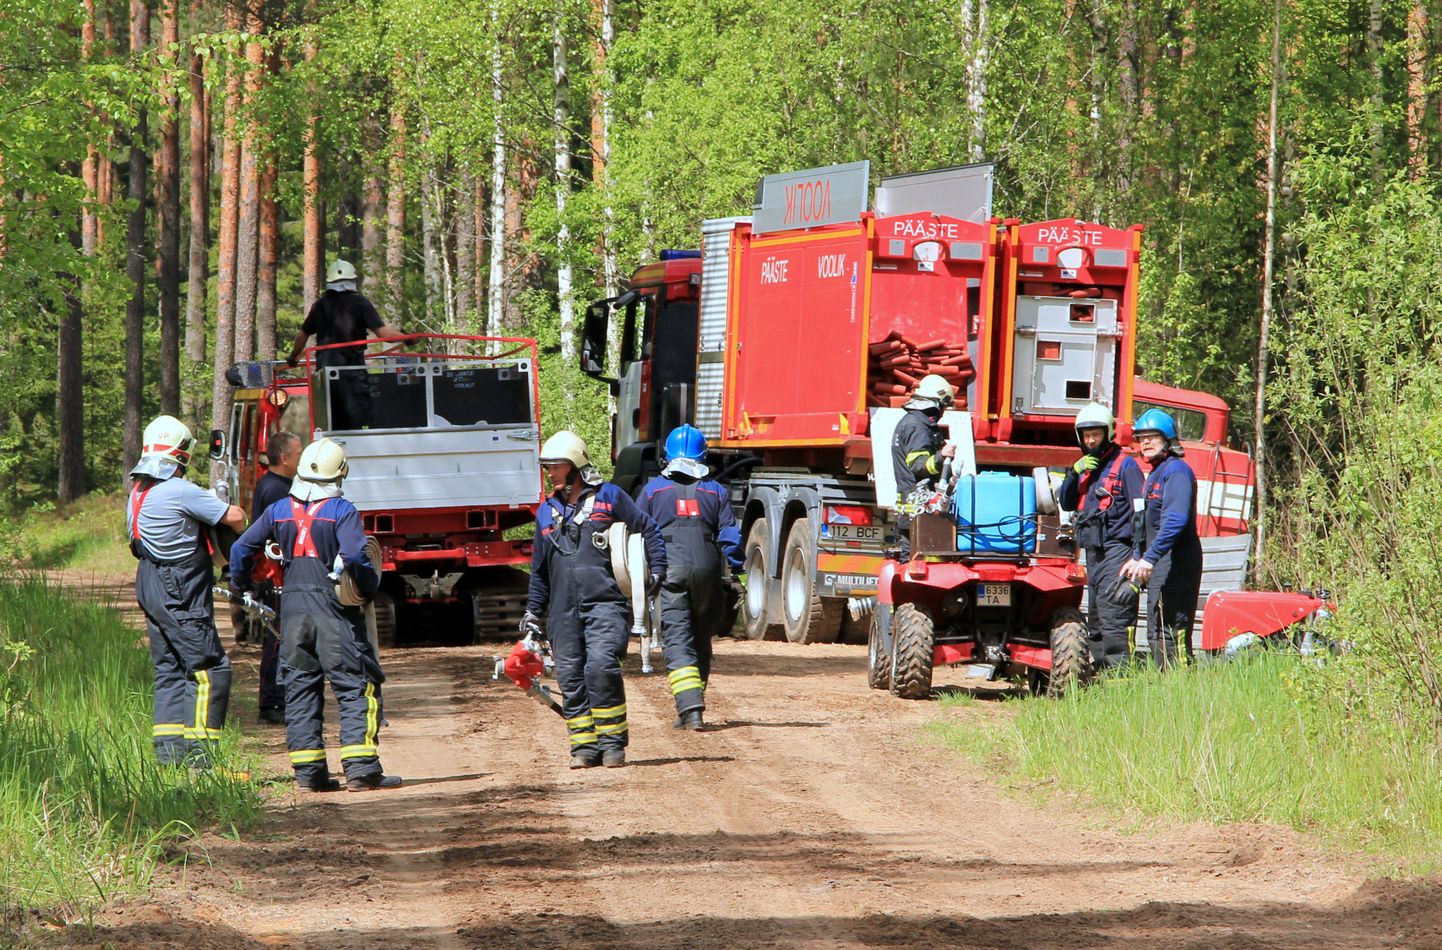 Viimane suur ühisõppus oli 27.–28. mail Valgamaal, kui päästjad mängisid läbi metsa ja maastiku tulekahju raskesti ligipääsetaval territooriumil.